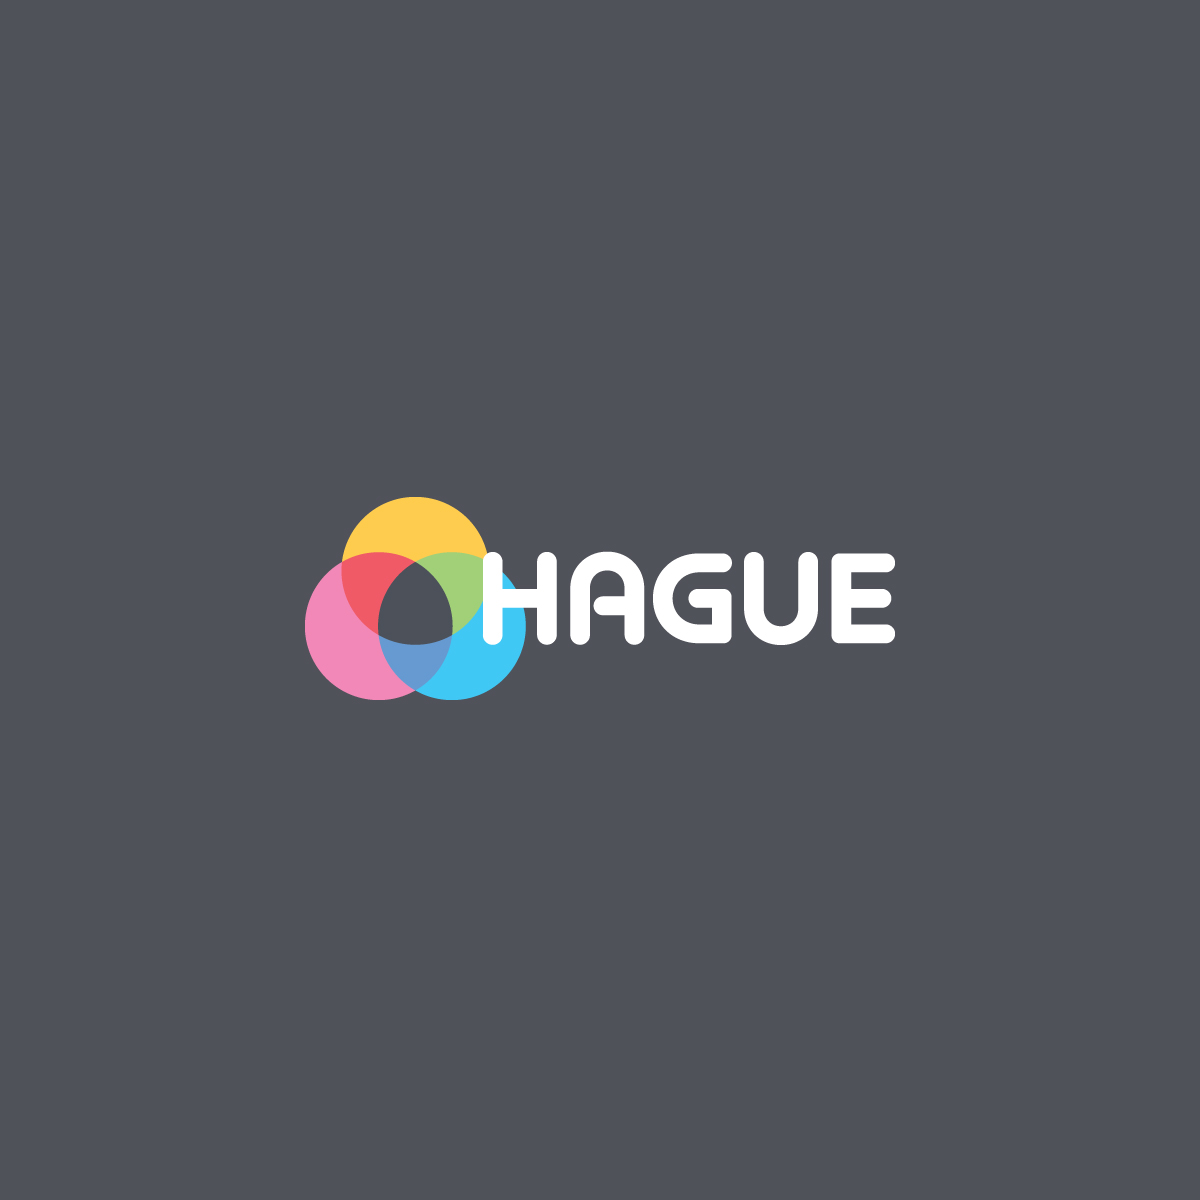 Hague Group acquires PSL Print Management Ltd